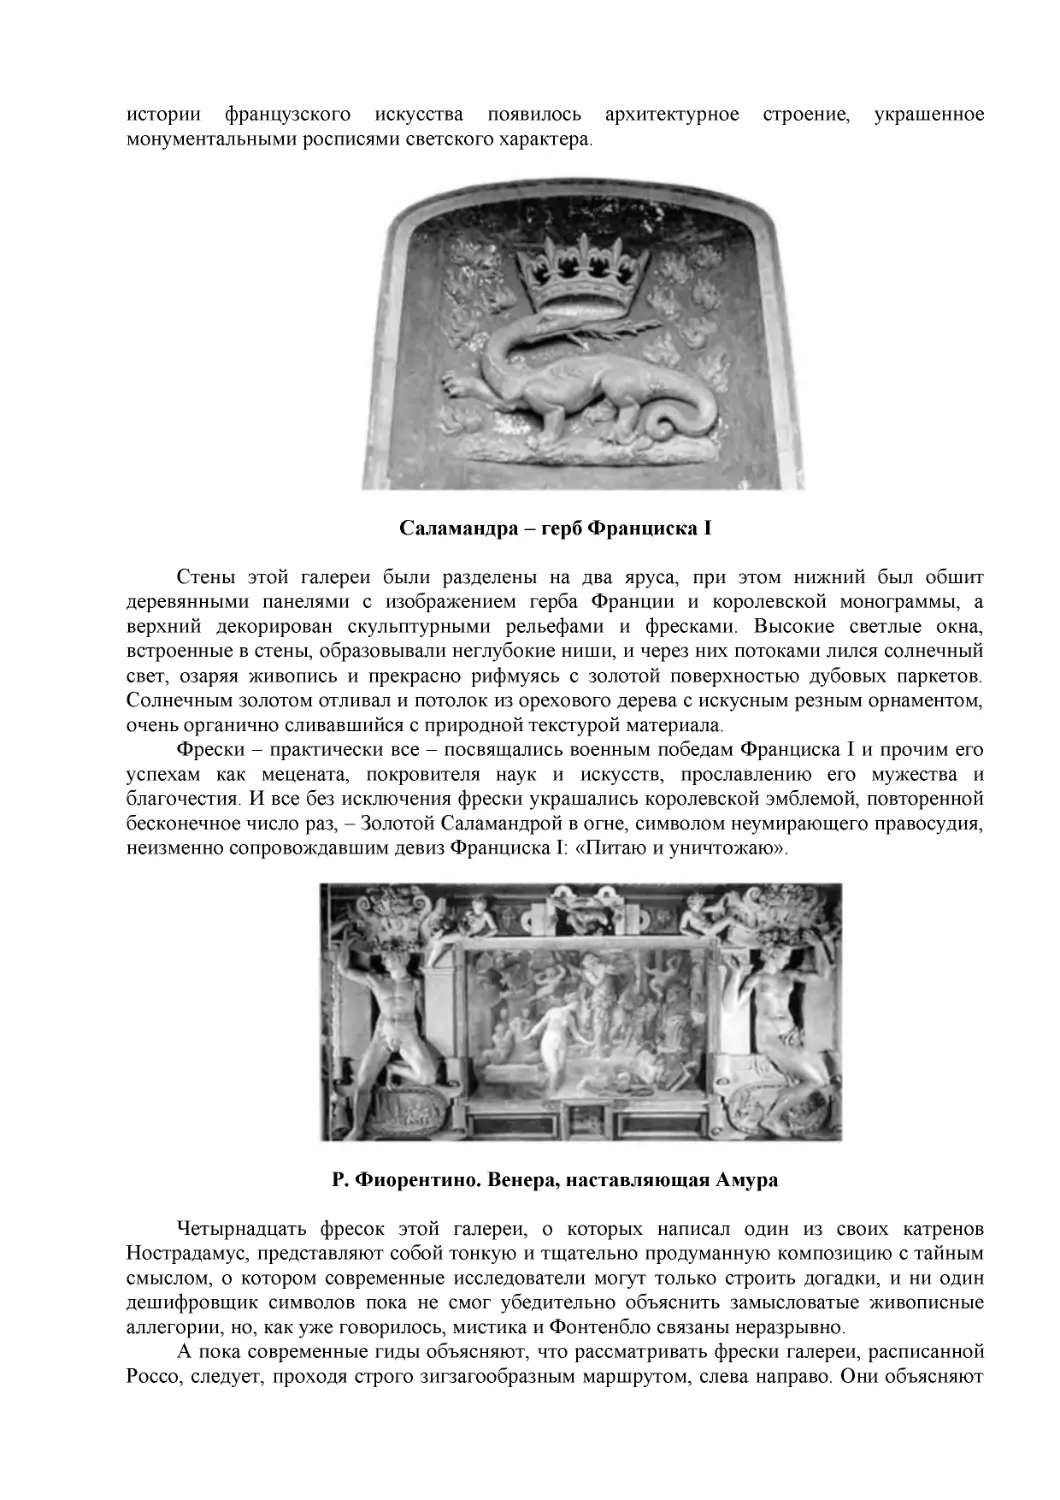 Саламандра – герб Франциска I
Р. Фиорентино. Венера, наставляющая Амура